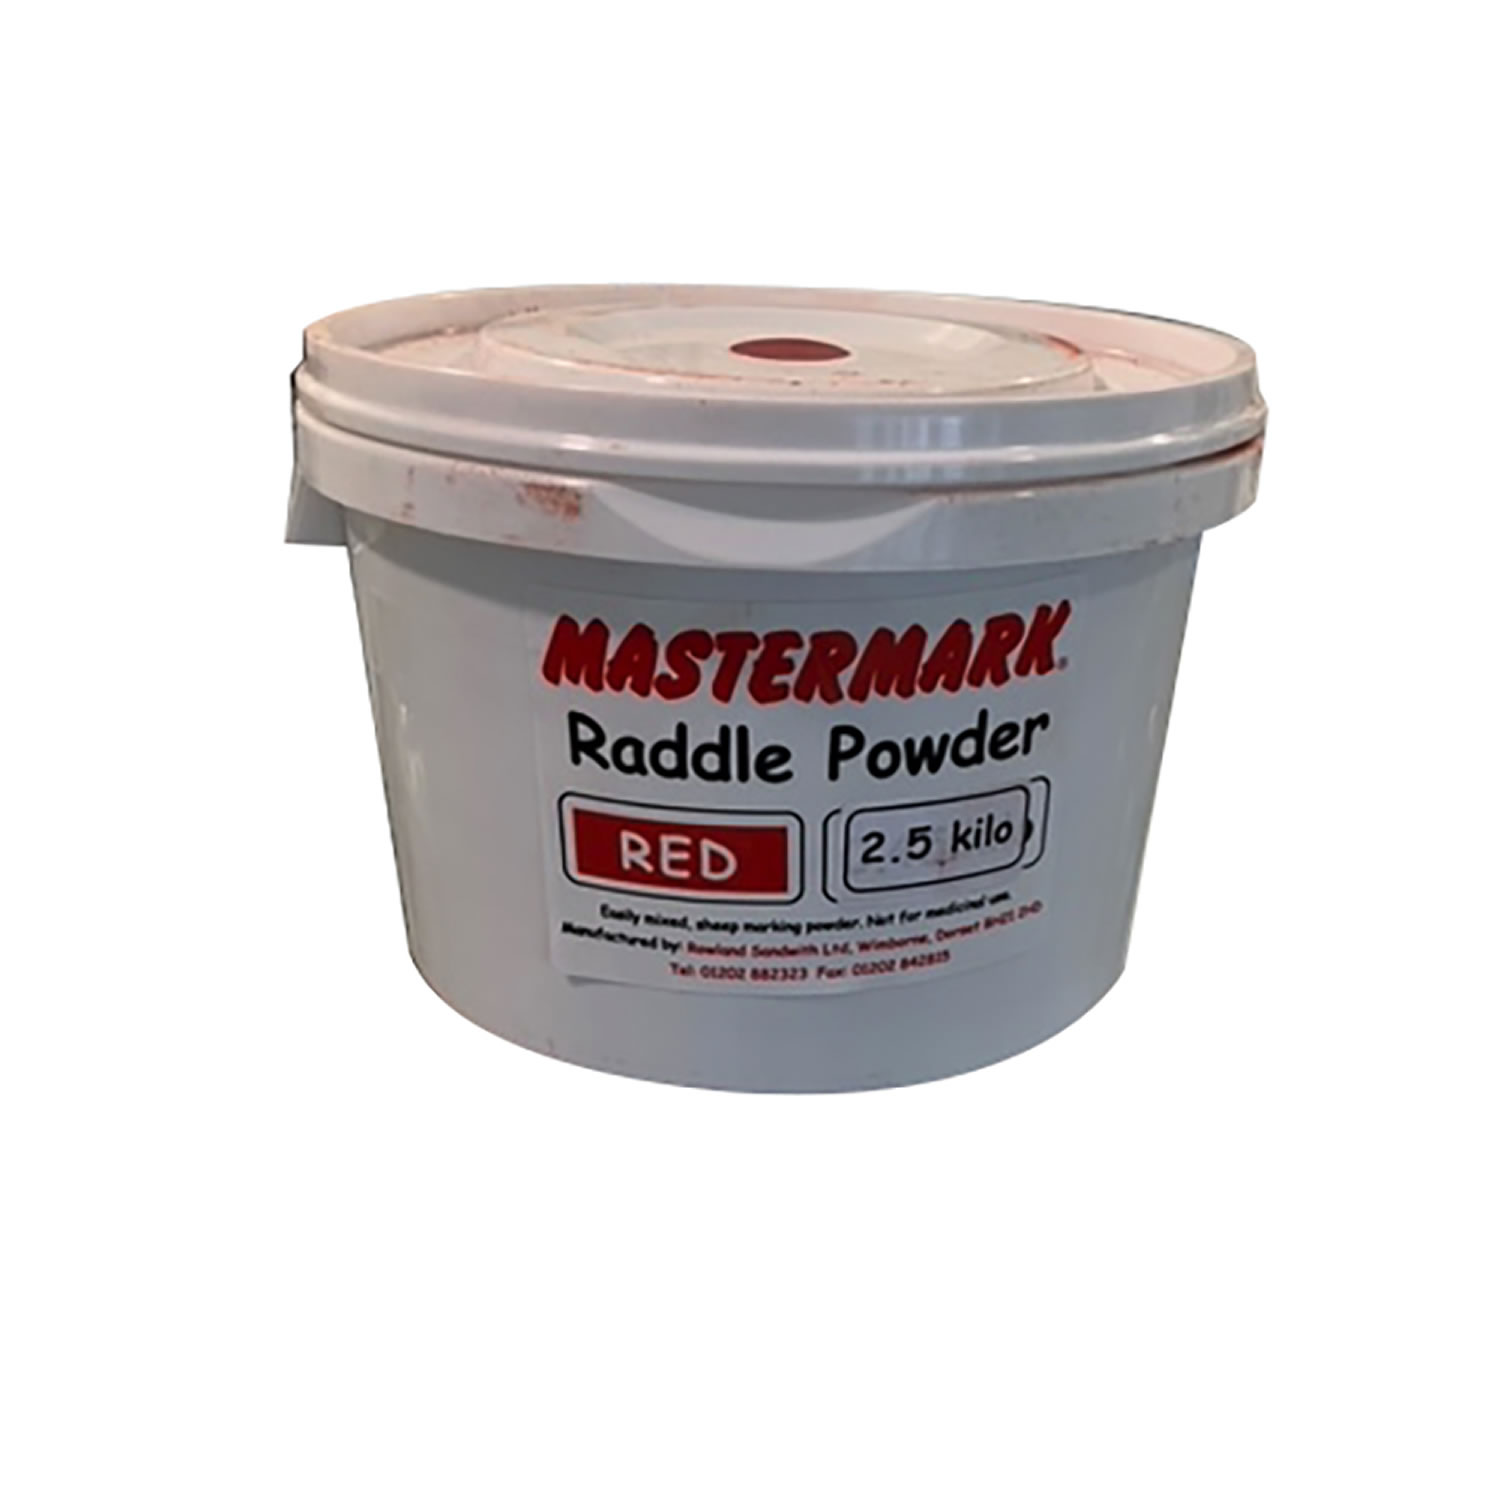 MASTERMARK RADDLE POWDER RED X 2.5 KG